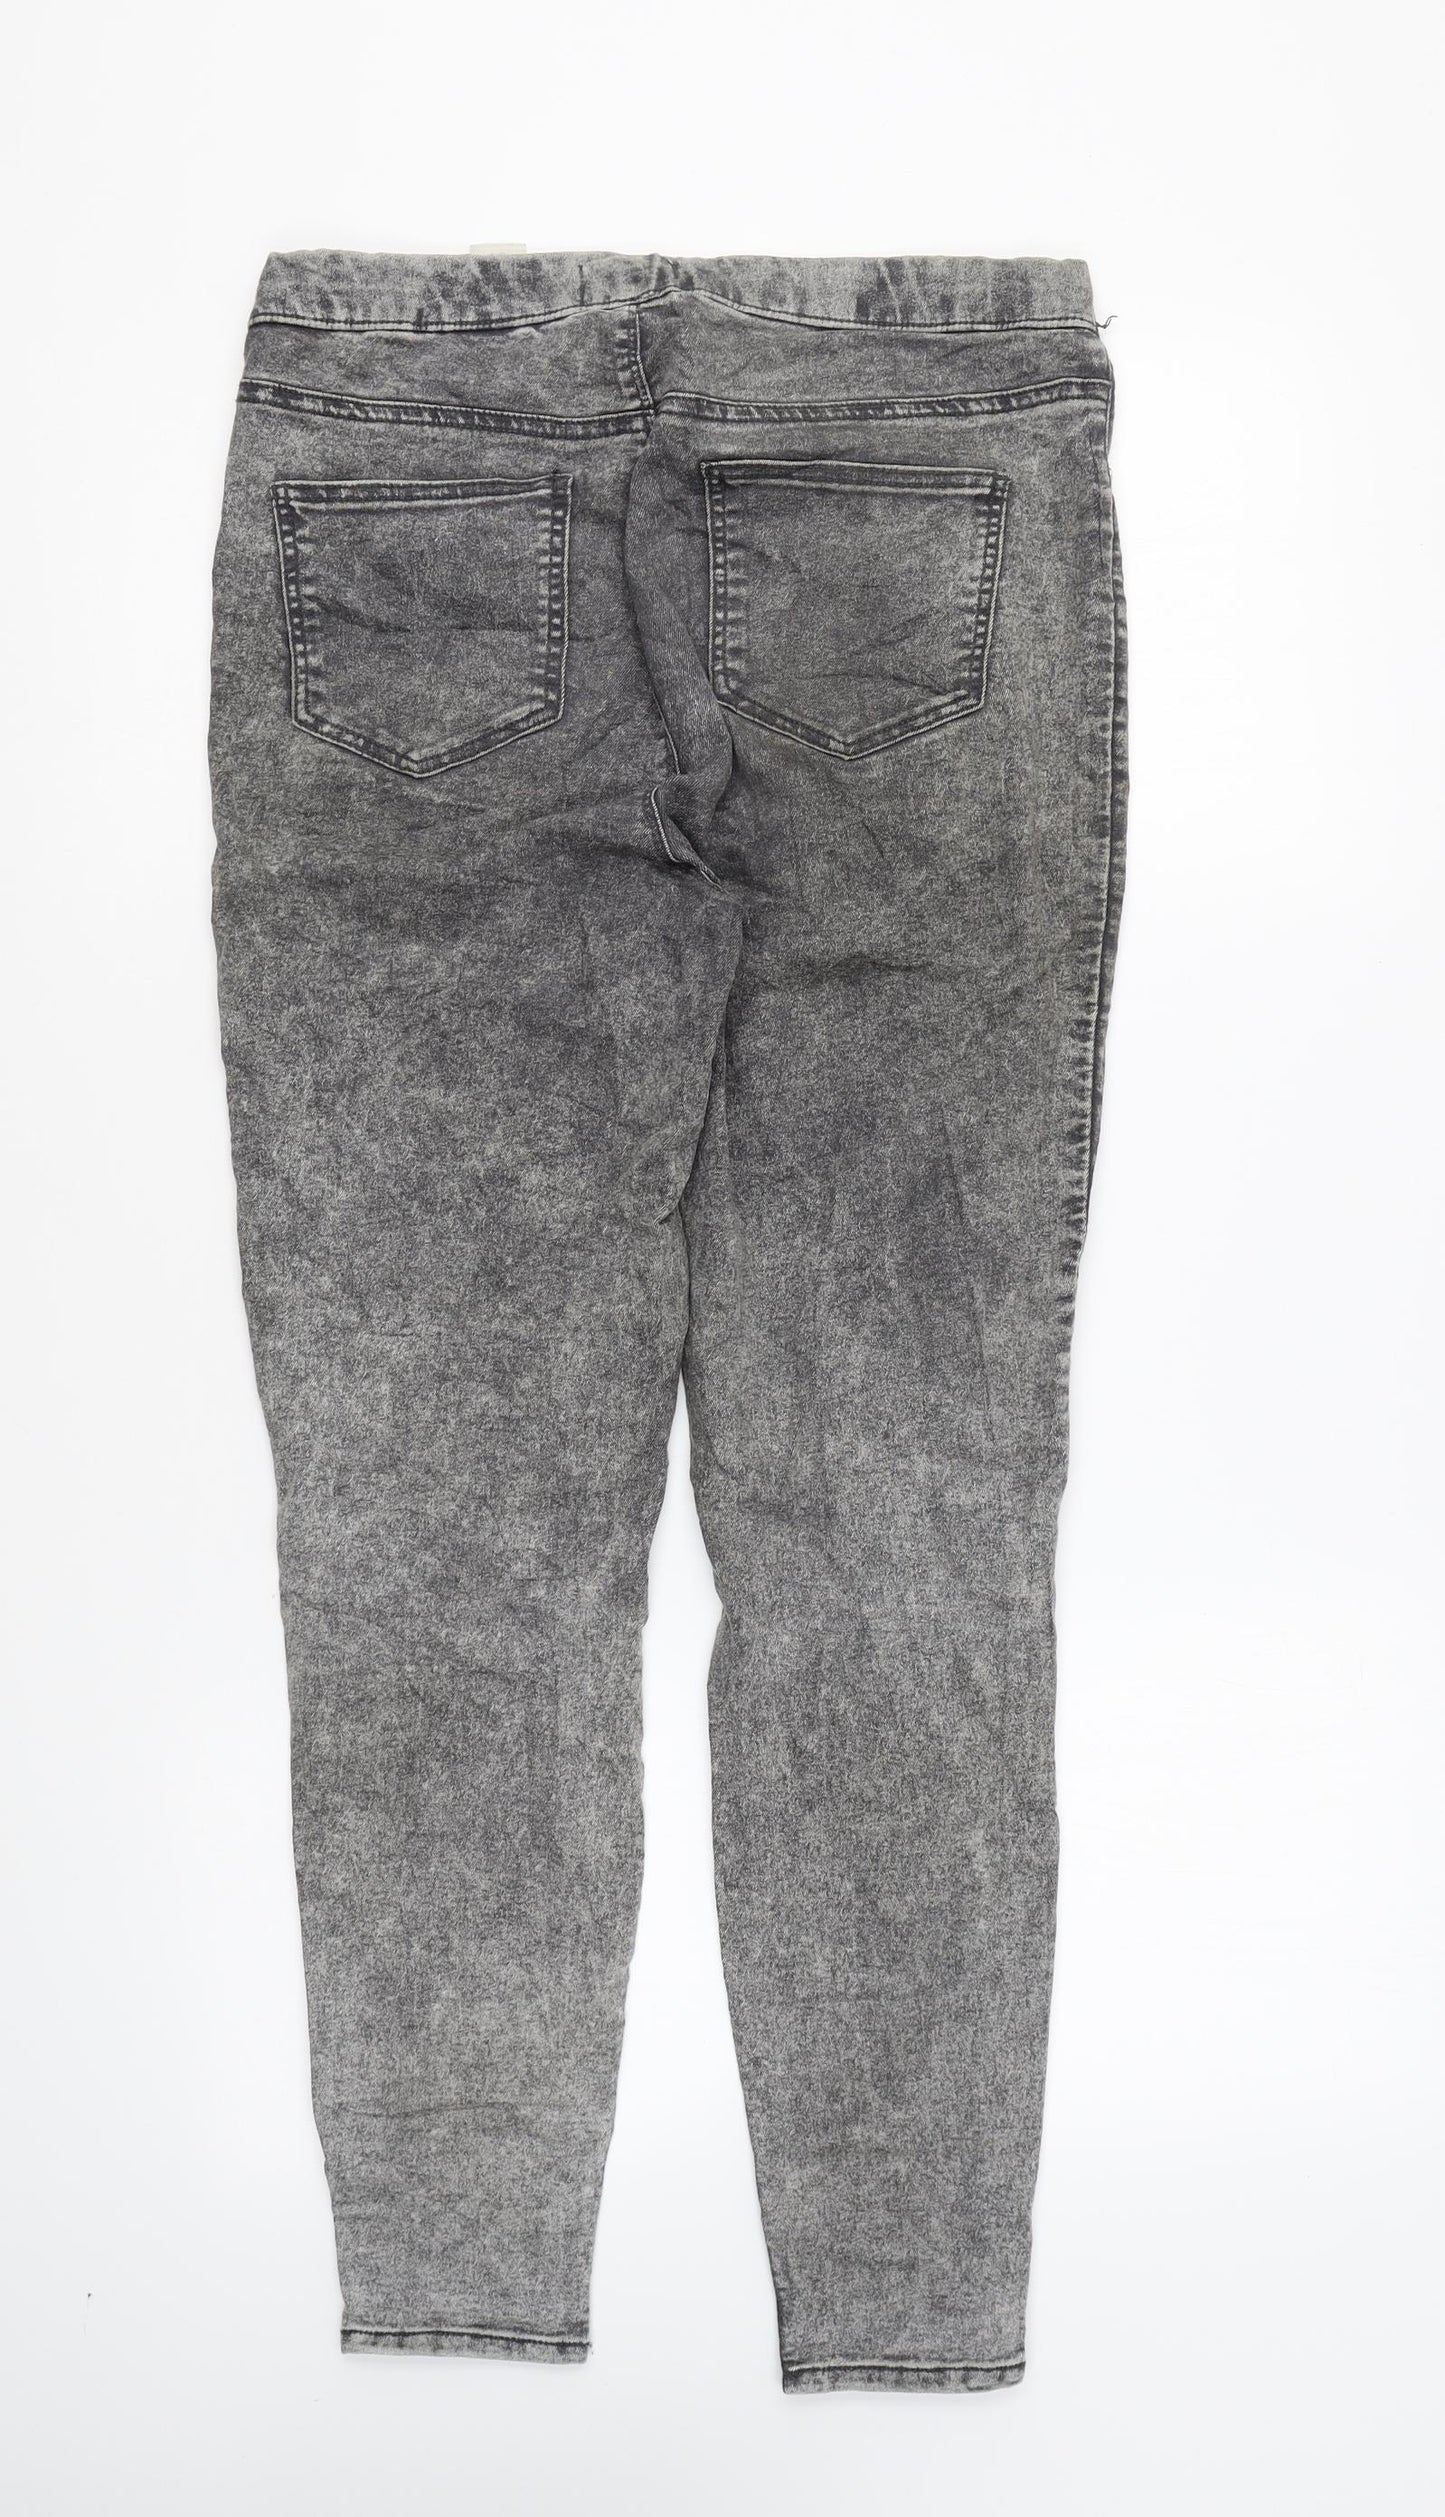 Papaya Womens Grey Cotton Jegging Leggings Size 10 L26 in - Acid Wash